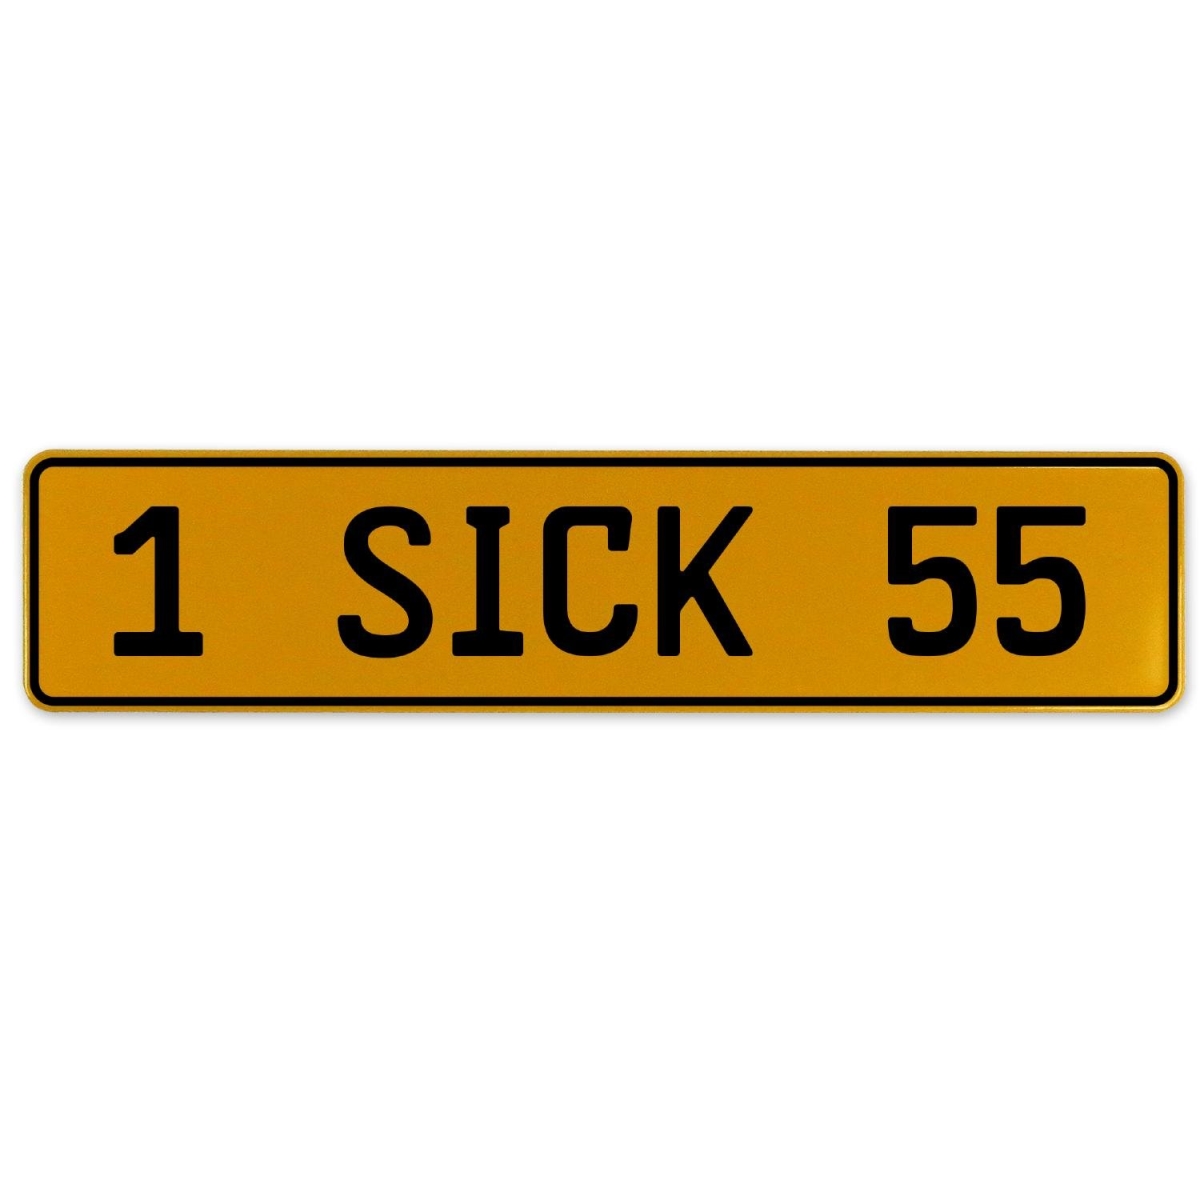 1 Sick 55 - Yellow Aluminum Street Sign Mancave Euro Plate Name Door Sign Wall